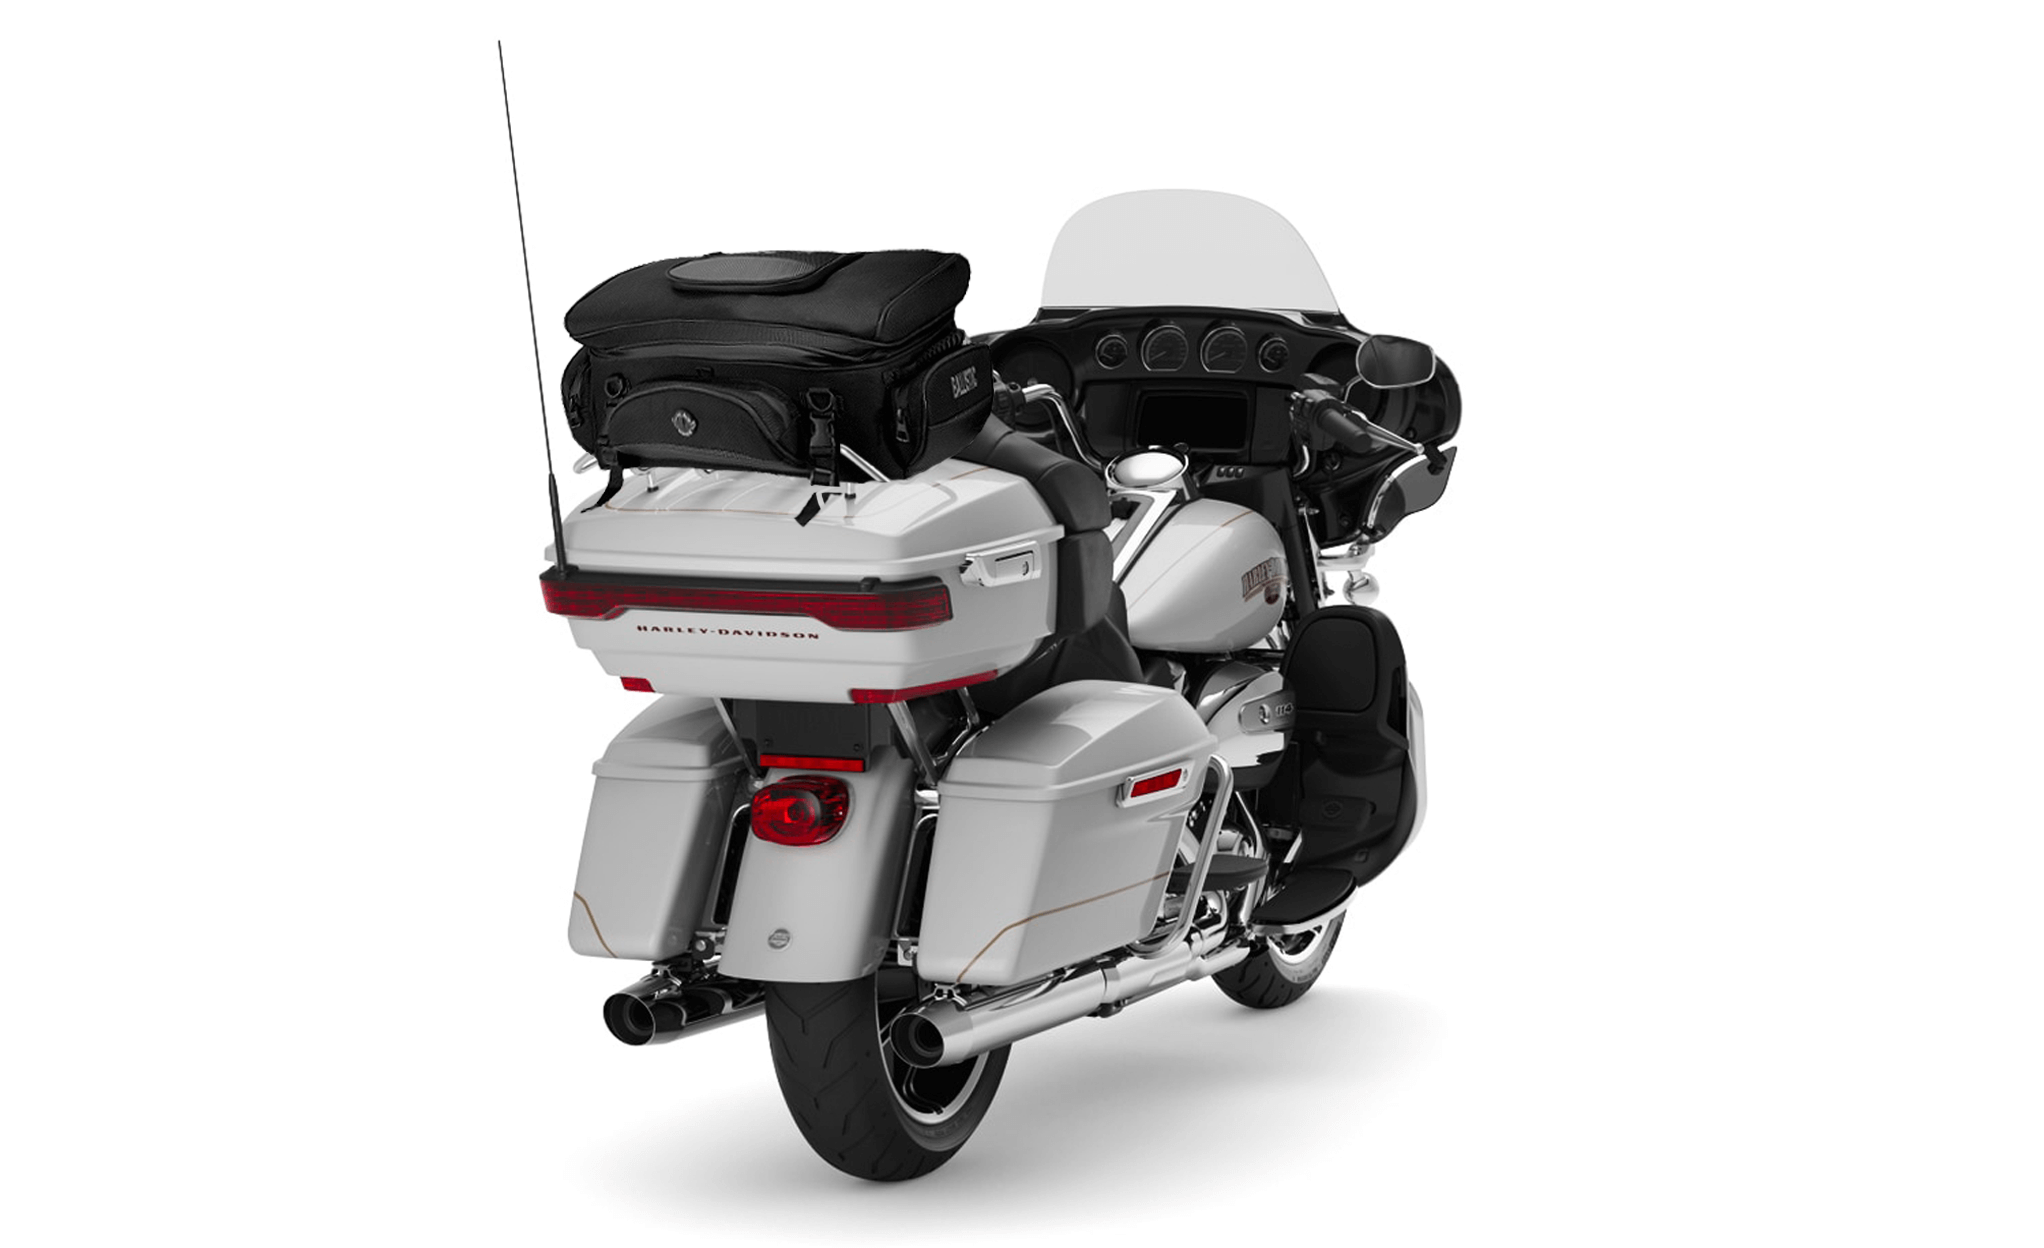 Viking Voyage Elite XL Kawasaki Motorcycle Sissy Bar Bag Bag on Bike View @expand